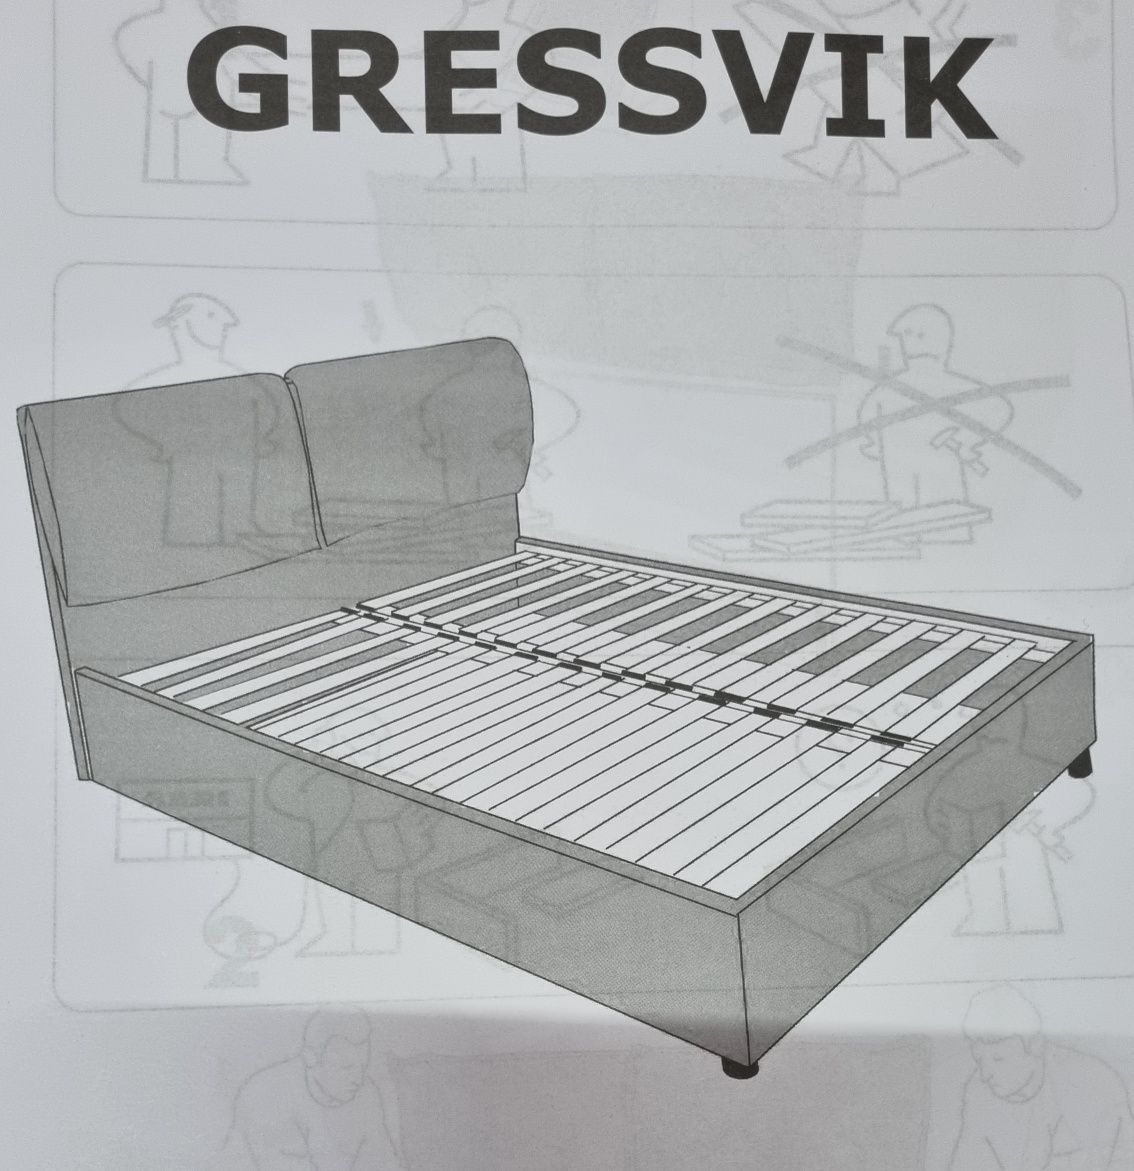 Husă cu pernă pat Ikea Gressvik